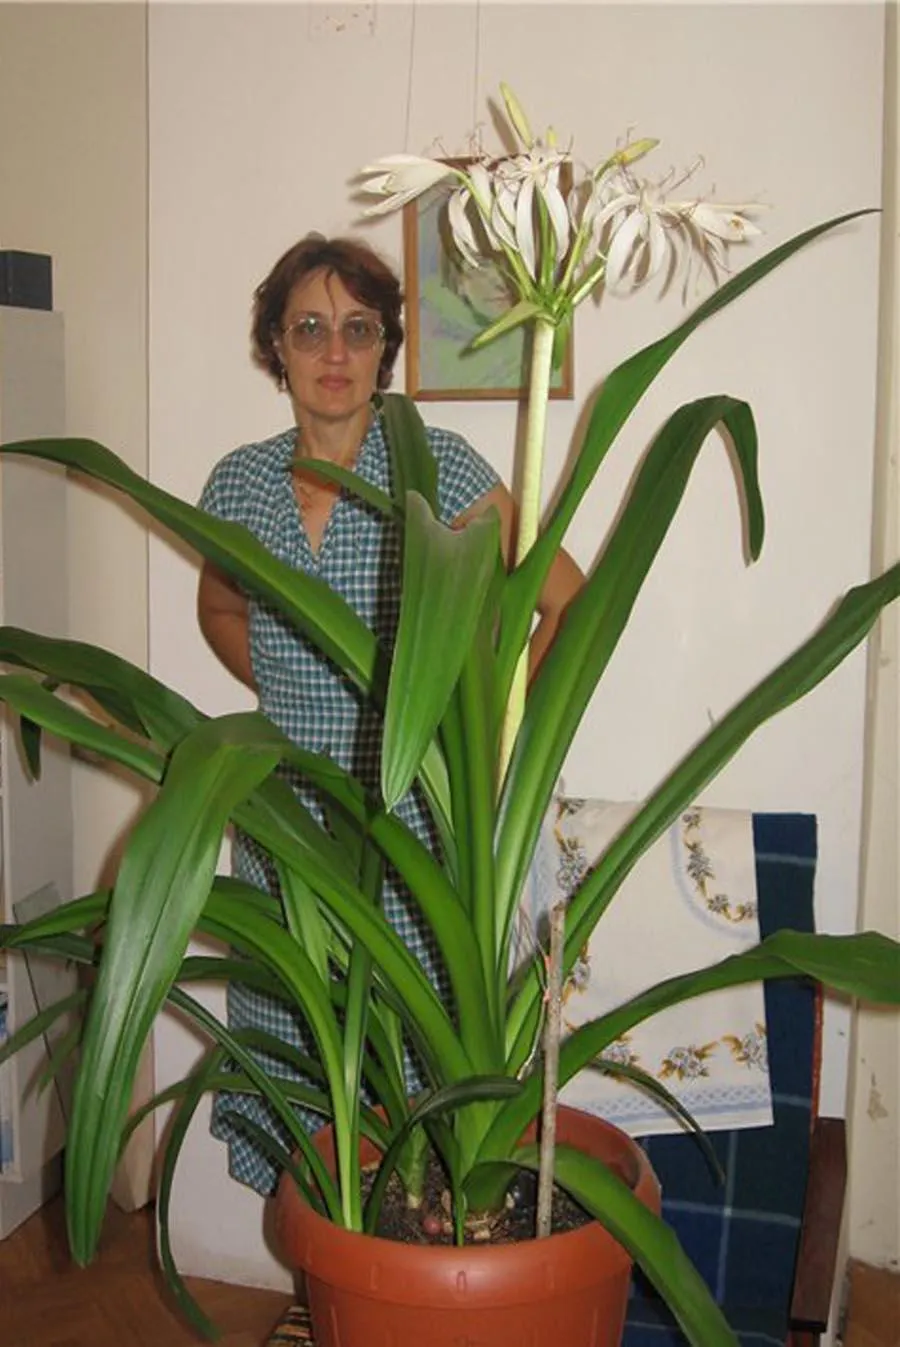 Орхидеи с длинными узкими листьями фото и название